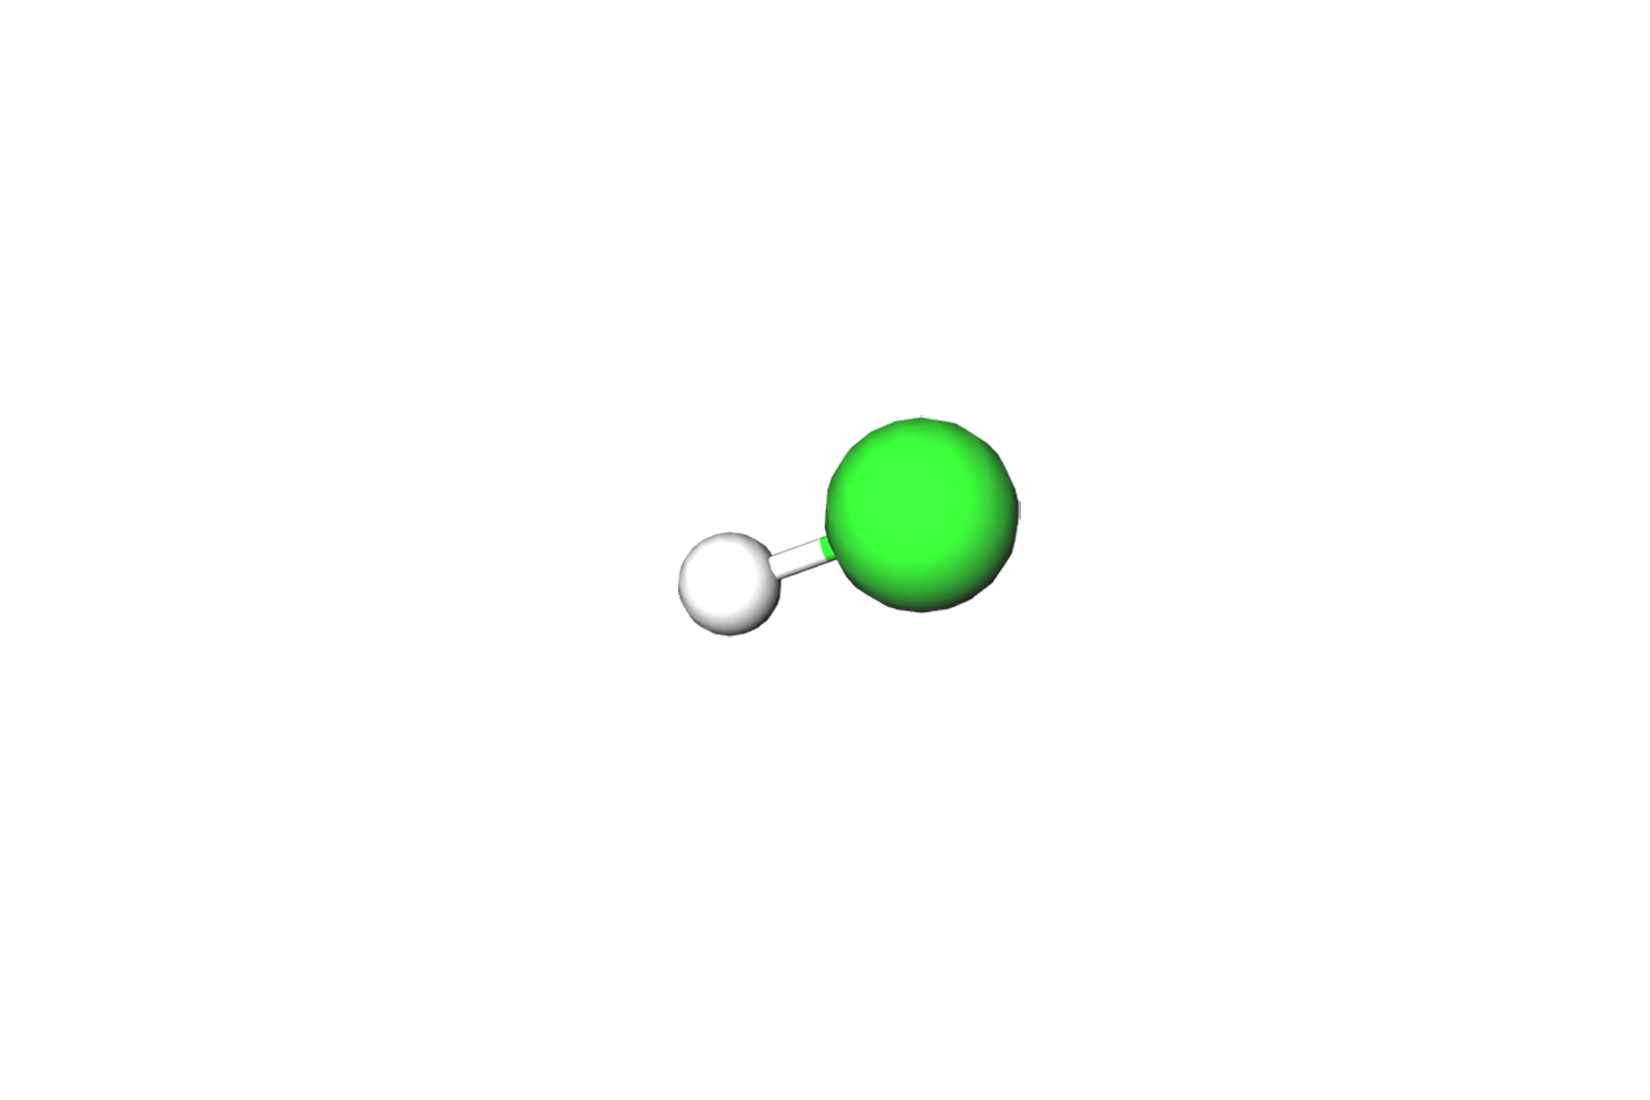 Fotografija prikazuje model klorovodika, model je izrađen od jedne velike zelene i manje bijele kuglice povezane štapićem